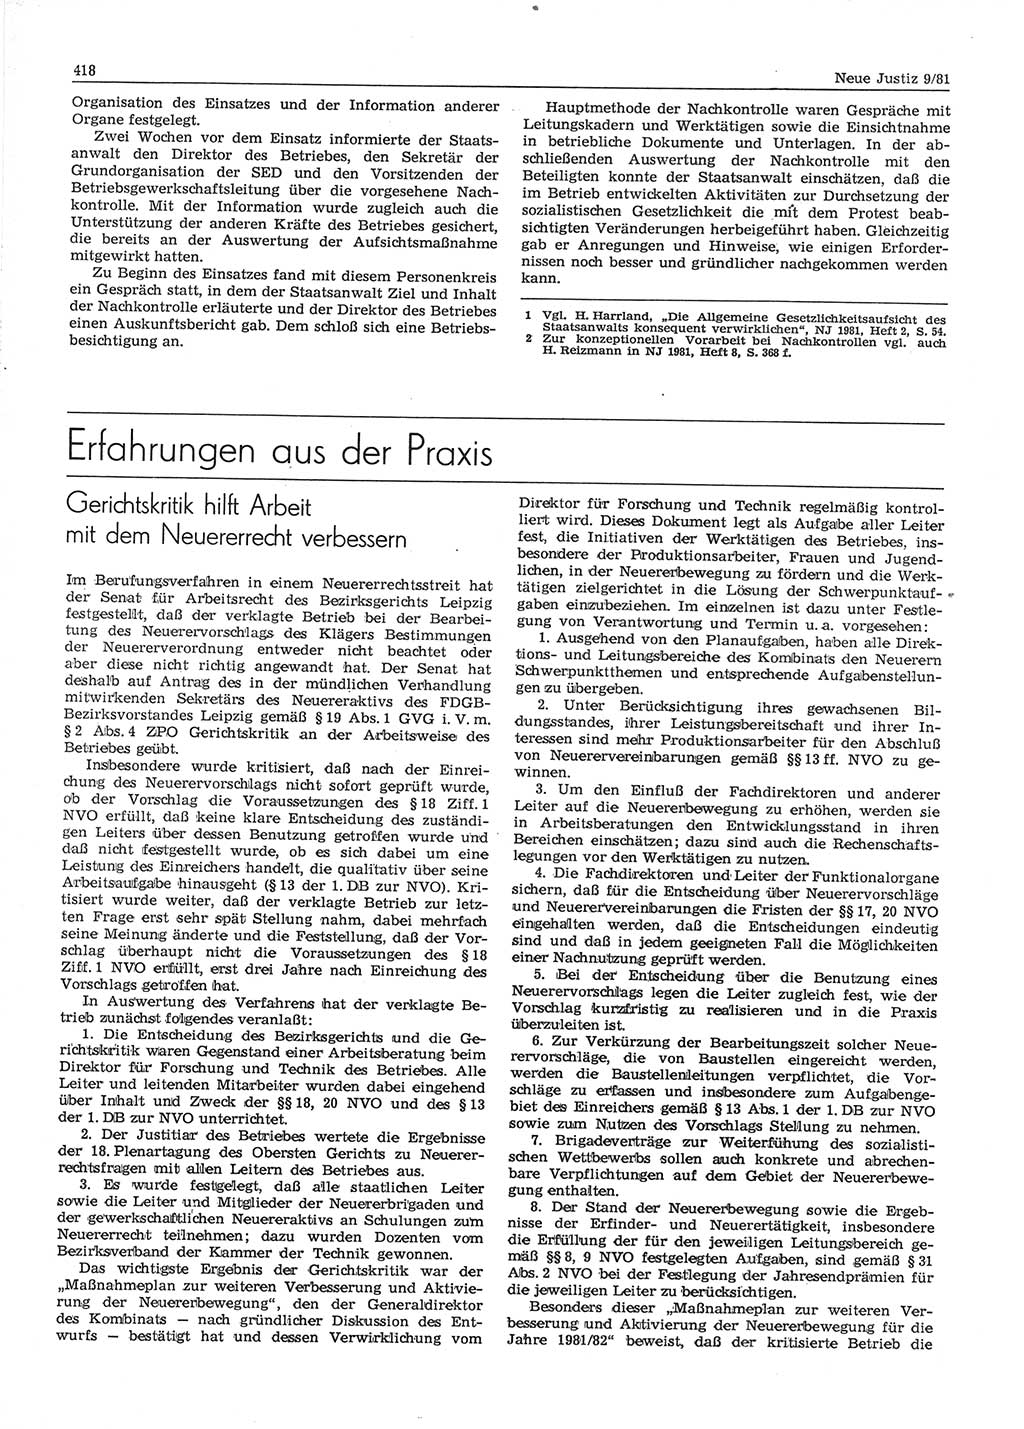 Neue Justiz (NJ), Zeitschrift für sozialistisches Recht und Gesetzlichkeit [Deutsche Demokratische Republik (DDR)], 35. Jahrgang 1981, Seite 418 (NJ DDR 1981, S. 418)